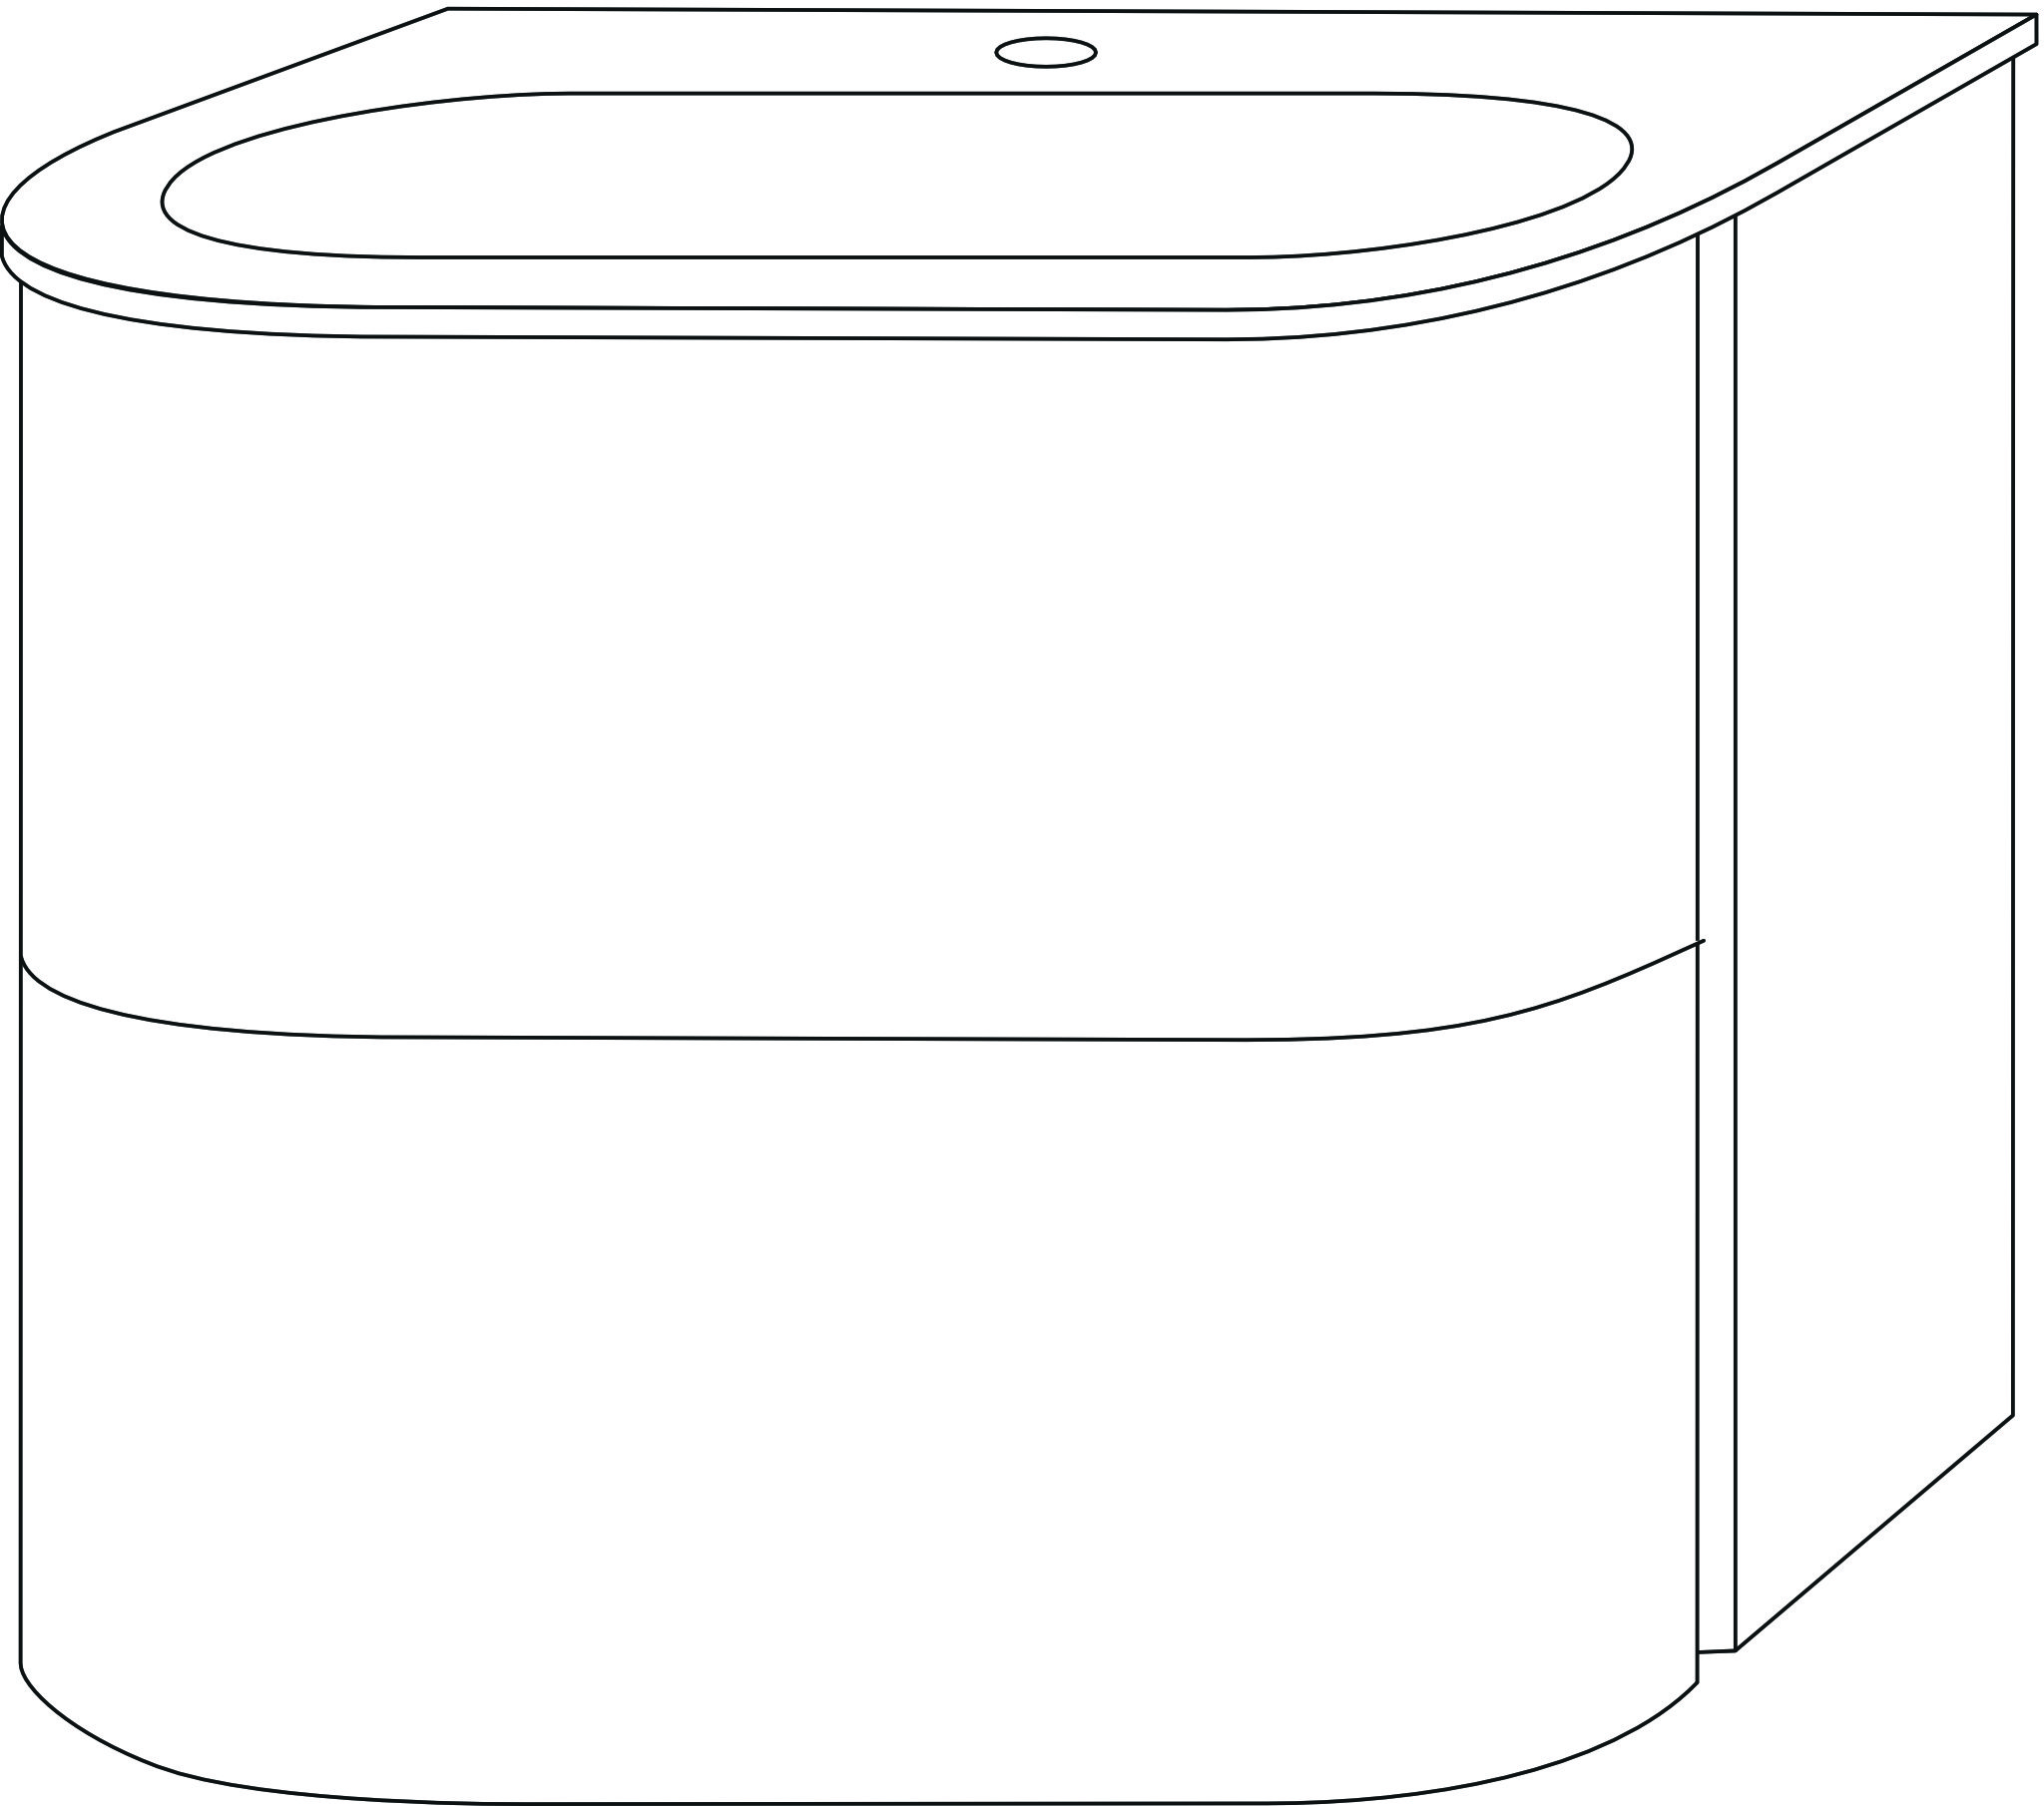 Sanipa Glas-Waschtisch-Set mit Waschtischunterschrank „4balance“ 58,4 × 51,4 × 52,2 cm in Weiß-Matt, ohne Beleuchtung